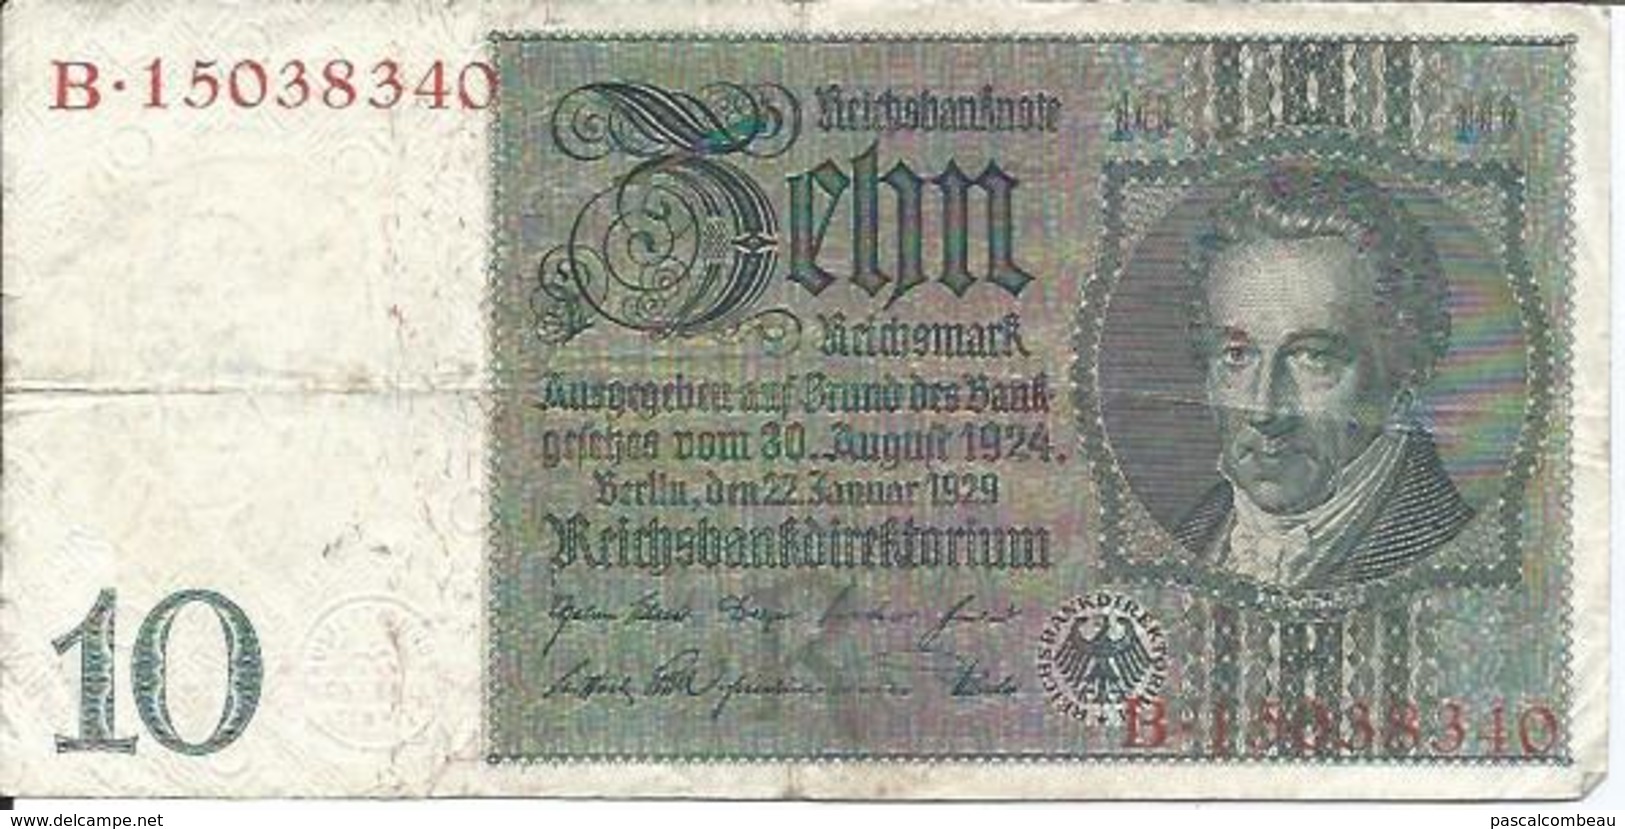 BILLET DE 10 RENTENMARK - BANKNOTE  ZEHNRENTENMARK - 10 Rentenmark